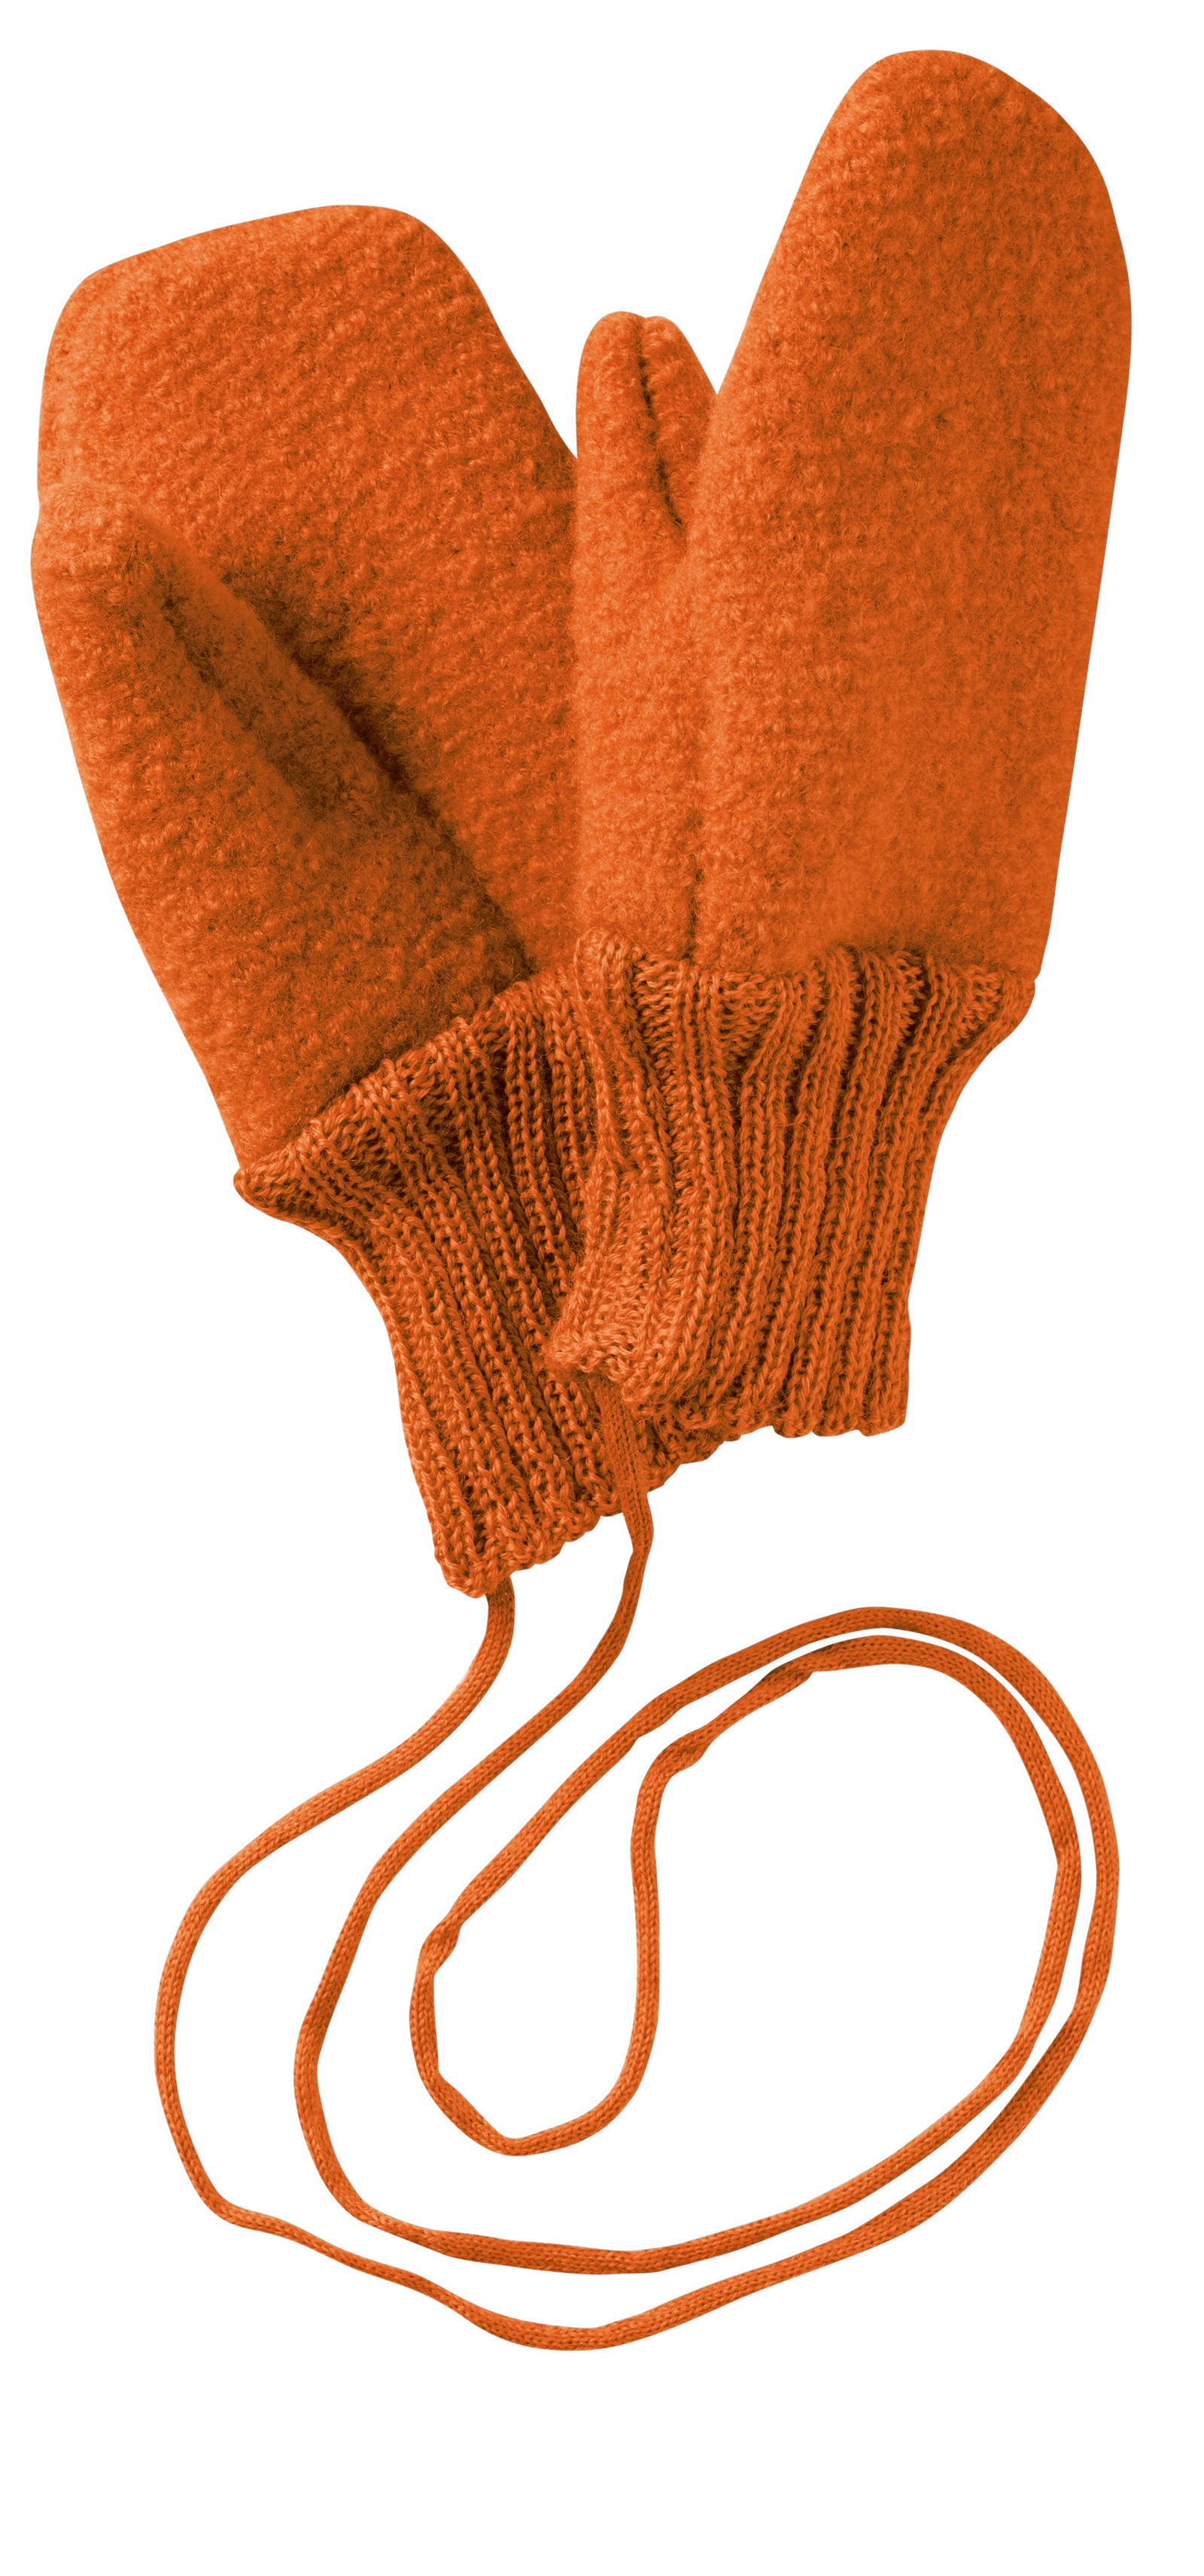 Disana - Gebreide legging - Biologische wol -  – Zoen voor  Gust